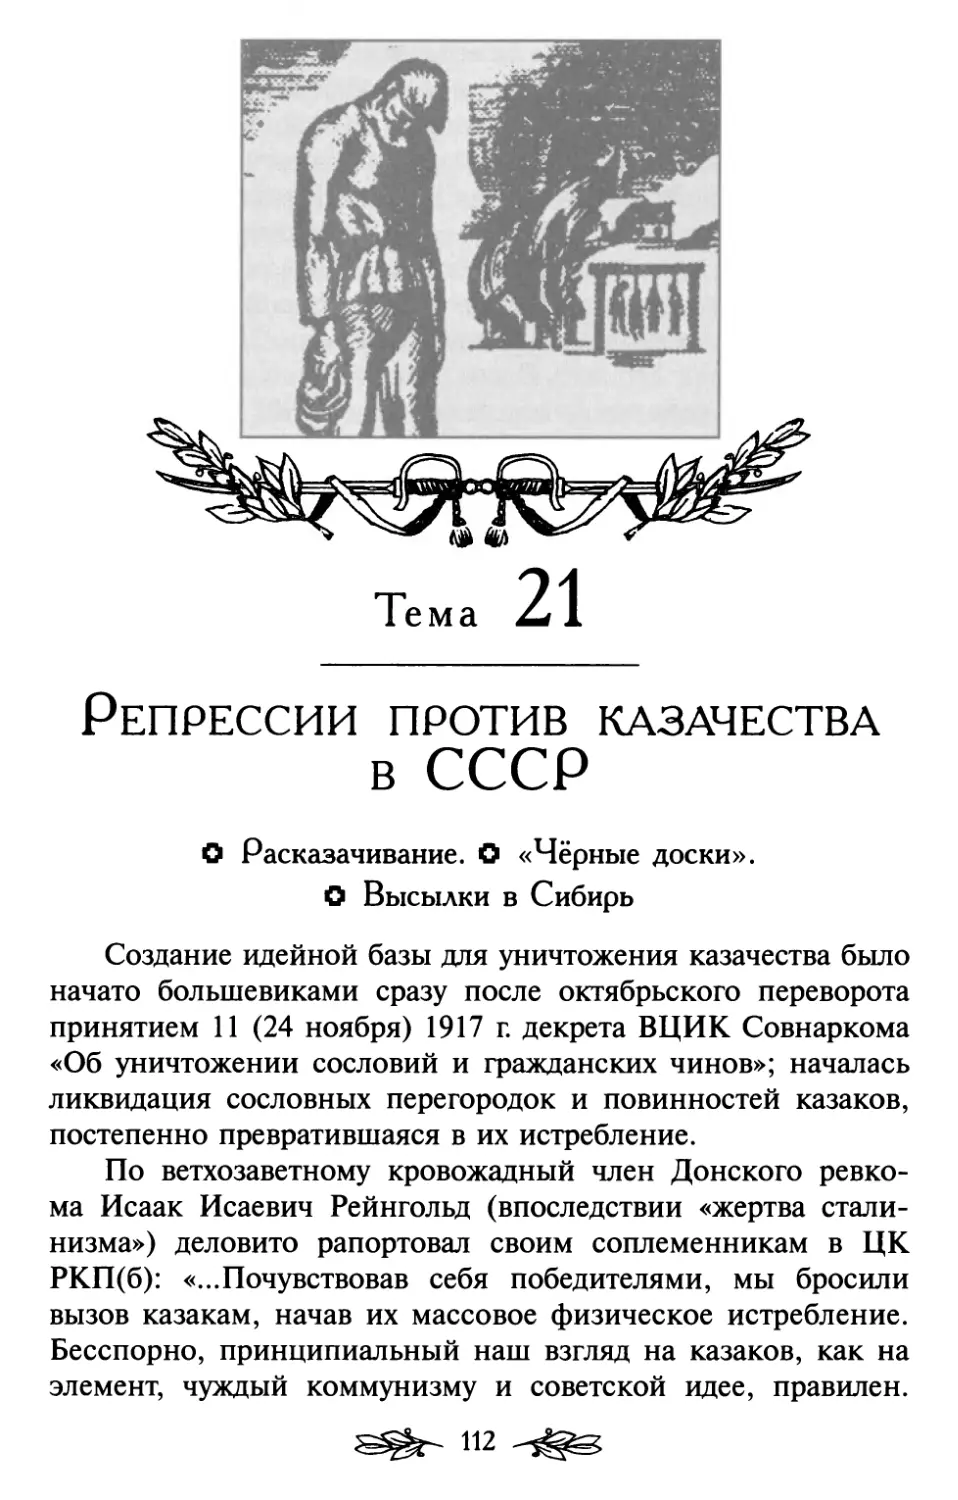 Тема 21. Репрессии против казачества в СССР